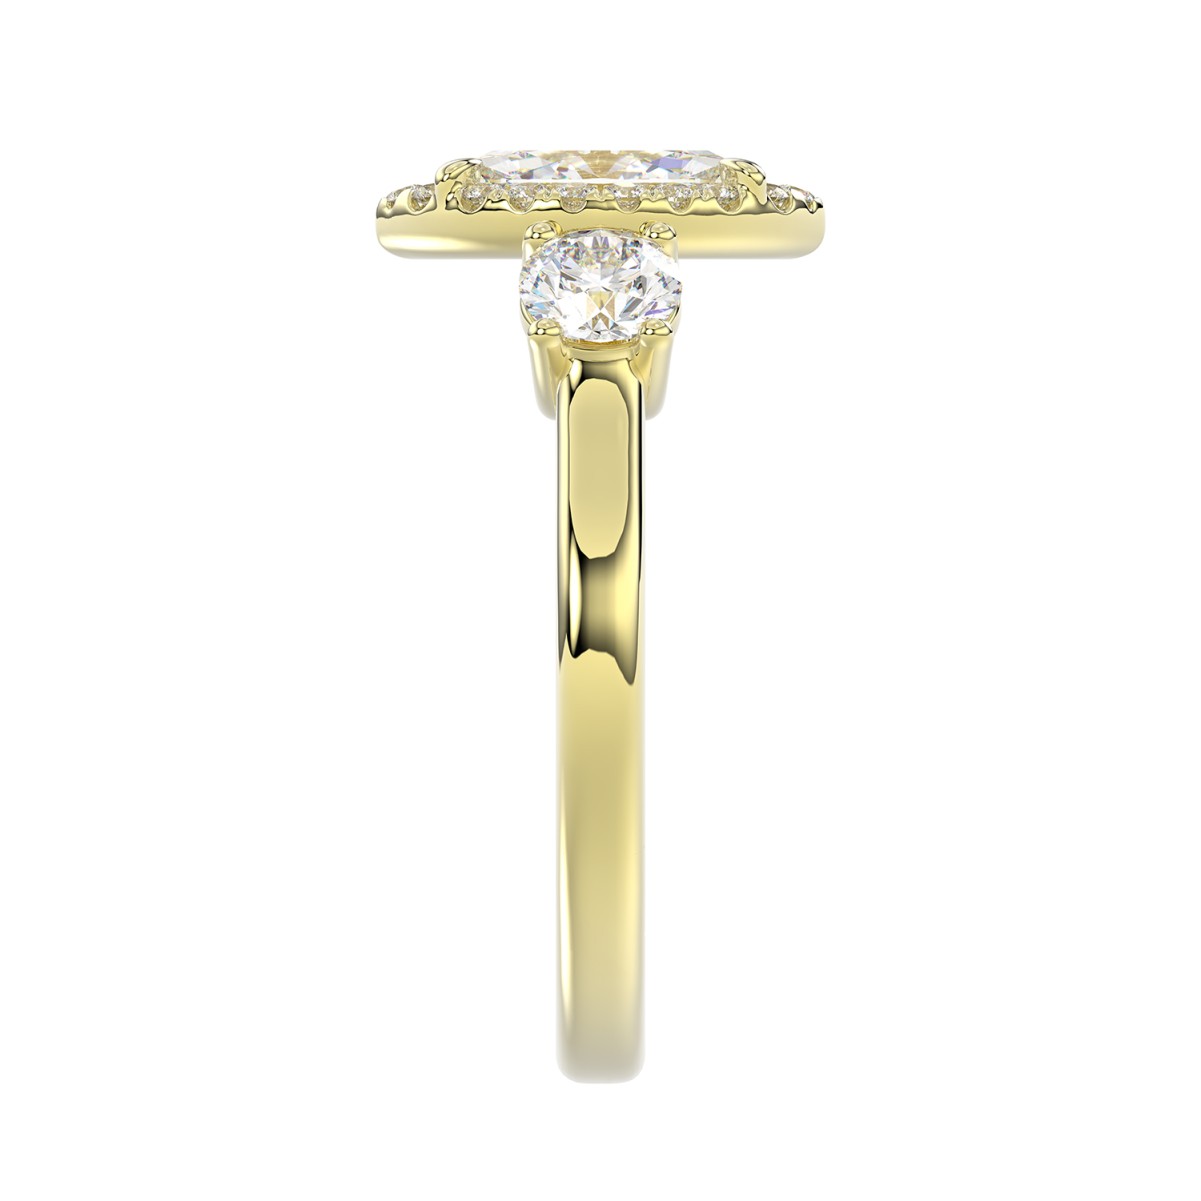 14K YELLOW GOLD 1 1/2CT ROUND/MARQUISE DIAMOND LADIES RING(CENTER STONE MARQUISE DIAMOND 3/4CT / SIDE STONE ROUND DIAMOND 5/8 CT)